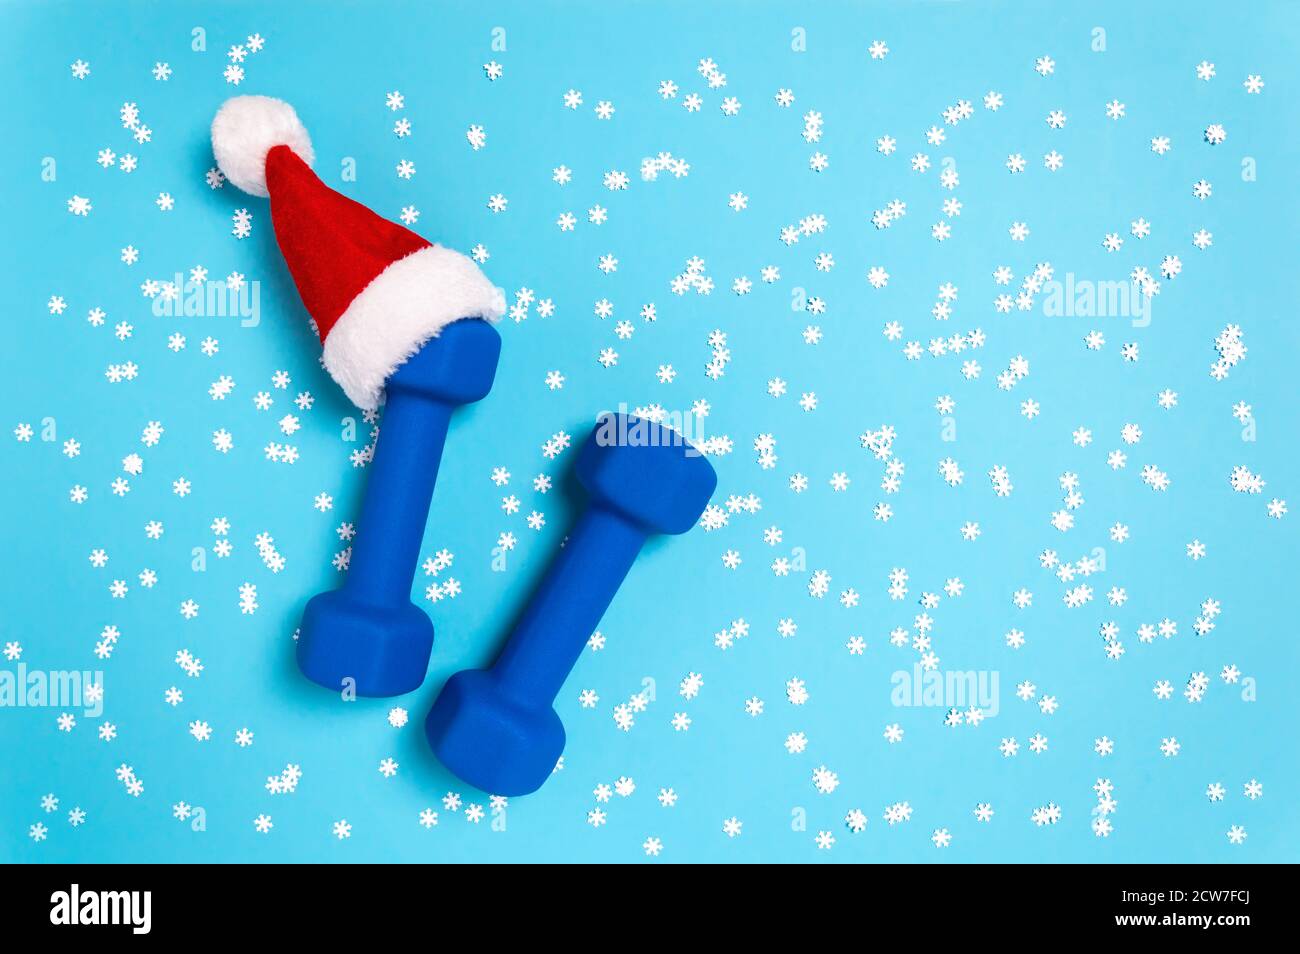 Weihnachtssport flach lag mit Hanteln in rot Weihnachtsmann Hut auf blauem Hintergrund. Weihnachten und Neujahr Urlaubskonzept für Fitness, Training und gesund Stockfoto